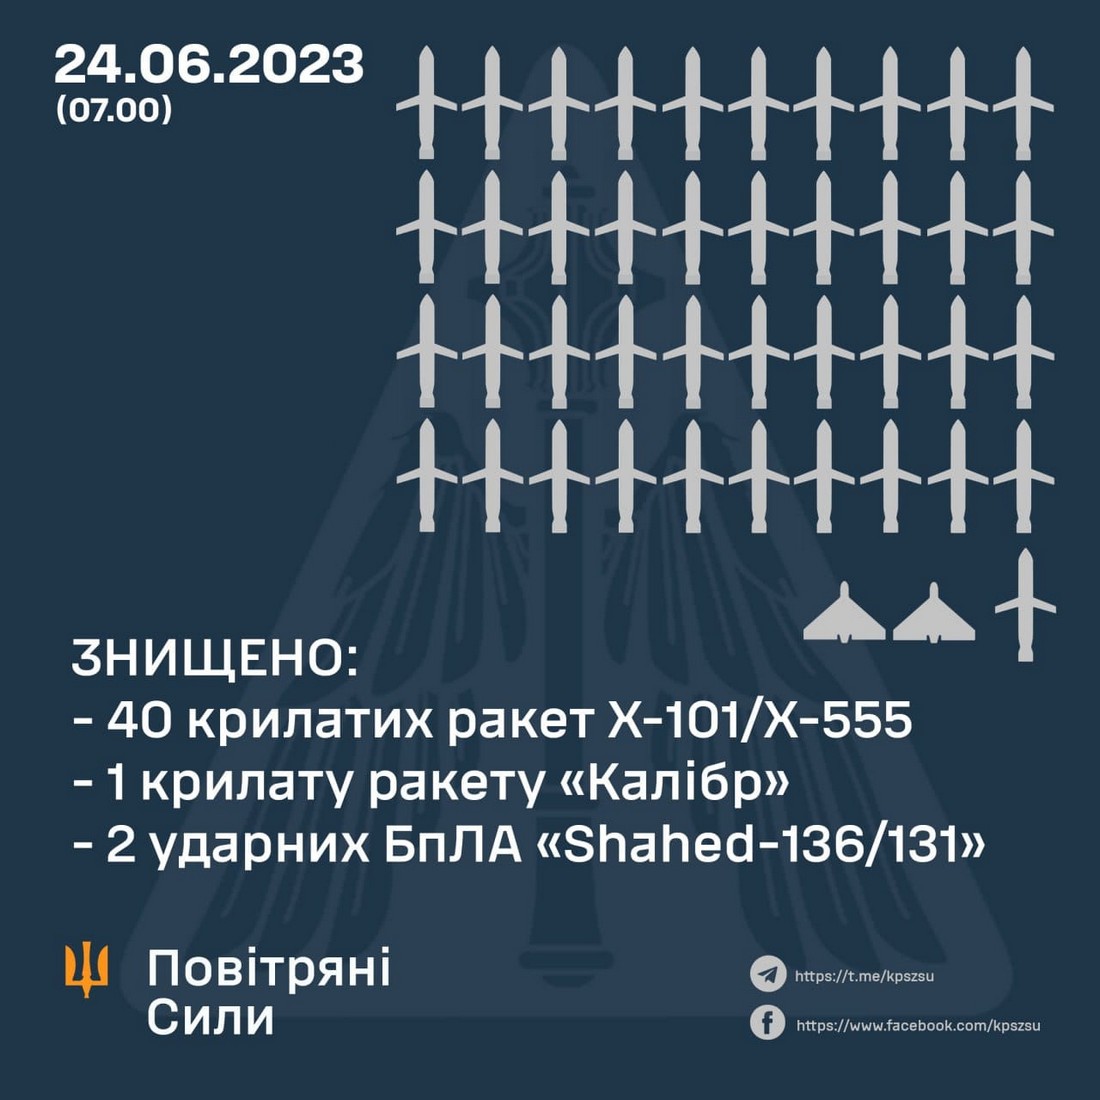 Повномасштабна війна в Україні триває вже чотириста вісімдесят шосту добу. Про ситуацію на фронті 24 червня і втрати противника НСН повідомляє, посилаючись на Генштаб ЗСУ.
Нічна повітряна атака
Російські загарбники завдали ракетного удару по території України крилатими ракетами повітряного базування із бомбардувальників Ту-95мс, Ту-22м3, морського базування «Калібр» та ударними дронами Shahed-136/131.
10 літаків стратегічної авіації російських терористів здійснили пуски 40 крилатих ракет Х-101/Х-555 з Каспійського моря.
Вісім бомбардувальників дальньої авіації Ту-22м3 завдали ударів 9-ма ракетами Х-22 з північного, південного та східного напрямків. З акваторії Чорного моря окупанти здійснили пуски двох ракет морського базування «Калібр». Із півдня противник атакував двома ударними дронами Shahed-136/131.
Силами та засобами протиповітряної оборони збито усі 40 крилатих ракет Х-101/Х-555, одну крилату ракету «Калібр» та два ударні дрони «Shahed-136/131». 
До відбиття повітряної атаки залучено підрозділи зенітних ракетних військ, авіацію, мобільні вогневі групи повітряних командувань «Центр», «Південь» та «Схід» ПС ЗСУ. Ракети Х-22 російські терористи спрямували у напрямку Дніпра та Кривого Рогу.
Загальна ситуація на фронті 24 червня
Протягом минулої доби ворог завдав ракетно-авіаційного удару по території України, застосувавши 14 крилатих ракети Х-101/Х-555, 3 дрони “Shahed”, та 4 зенітні керовані ракети із С-300 по Запоріжжю.
 Силами та засобами протиповітряної оборони 14 ракет та 2 дрони  було знищено. Також було знищено російський ударний вертоліт Ка-52 та 7 розвідувальних БпЛА.
Крім того, ворог завдав 51 авіаційного удару та здійснив 59 обстрілів з реактивних систем залпового вогню. На жаль, постраждали мирні люди.
Ймовірність завдання ракетних та авіаційних ударів по всій території України залишається високою.
Противник зосереджує основні зусилля на Лиманському, Авдіївському та Мар’їнському напрямках - протягом доби відбулось понад 28 бойових зіткнень.
Ситуація на окремих напрямках
На Волинському та Поліському напрямках оперативна обстановка без суттєвих змін. 
На Сіверському та Слобожанському напрямках противник завдав авіаційного удару в районах Павлівки Сумської області та Гатища і Плетенівки Харківської області. Здійснив мінометні та артилерійські обстріли населених пунктів Карповичі, Карабани, Михальчина Слобода Чернігівської області; Середина-Буда, Шалигіне, Попівка, Атинське, Іскрисківщина, Волфине, Павлівка, Стукалівка, Ободи, Кіндратівка Сумської області, а також Гур'їв Козачок, Уди, Ветеринарне, Козача Лопань, Стрілеча, Олійникове, Нескучне, Огірцеве, Гатище, Вовчанськ, Нестерне, Плетенівка, Бударки, Землянки, Озерне, Вільхуватка, Чугунівка, Тополі на Харківщині.
На Куп’янському напрямку артилерійських і мінометних обстрілів противника зазнали Красне Перше, Фиголівка, Дворічна, Западне, Куп’янськ, Масютівка, Кислівка і Берестове  Харківської області.
На Лиманському напрямку противник здійснив безуспішні наступальні дії в напрямках Веселого та південніше Діброви. Завдав авіаційних ударів в районах Невське Луганської області та Білогорівка і Сіверськ Донецької області. Артилерійських обстрілів зазнали Невське і Білогорівка Луганської області та Торське, Серебрянка, Верхньокам’янське, Спірне і Роздолівка - Донецької.
На Бахмутському напрямку противник завдав авіаційних ударів в районах Хромове, Іванівське, Первомайське та Предтечине. Від ворожих артилерійських обстрілів постраждали  Васюківка, Оріхово-Василівка, Богданівка, Часів Яр, Іванівське, Південне та Нью-Йорк Донецької області.
На Авдіївському напрямку противник проводив безуспішні наступальні дії в районі Авдіївки Донецької області. Завдав авіаційних ударів в районах Новокалинове, Очеретине, Невельське, Авдіївка та Сєверне. Здійснив артилерійські обстріли населених пунктів Бердичі, Авдіївка, Тоненьке, Карлівка та Невельське Донецької області.
На Мар’їнському напрямку ворог проводив наступальні дії в районі Мар’їнки, успіху не мав. В той же час, здійснив артилерійські обстріли населених пунктів Красногорівка, Мар’їнка та Георгіївка Донецької області.
На Шахтарському напрямку ворог здійснив безуспішні наступальні дії в напрямках Вугледара та Золотої Ниви. Завдав авіаційних ударів в районах Золота Нива, Сторожеве, Макарівка і Благодатне Донецької області. Здійснив обстріли населених пунктів Парасковіївка, Новомихайлівка, Благодатне, Вільне Поле, Зелене Поле, Новопіль, Водяне, Вугледар та Сторожеве на Донеччині.
На Запорізькому та Херсонському напрямках противник продовжує вести оборонні дії, зосереджує основні зусилля на недопущенні просування наших військ. Намагався відновити втрачене положення в районі Макарівки Донецької області. Завдав авіаційних ударів в районах населених пунктів Новоданилівка, Оріхів, Степногірськ Запорізької області та Веселе, Козацьке і Антонівка на Херсонщині. Здійснив артилерійські обстріли населених пунктів Новодарівка, Темирівка, Левадне, Малинівка, Гуляйполе, Гуляйпільське, Чарівне, Залізничне, Білогір’я, Новоданилівка, Омельник, Червона Криниця, Преображенка, Оріхів, Єгорівка, Новоандріївка, Степове, П'ятихатки Запорізької області; Придніпровське, Нікополь Дніпропетровської області; Качкарівка, Республіканець, Козацьке, Шляхове, Бургунка, Золота Балка, Дудчани, Іванівка, Молодіжне, Білозерка, Ромашкове, Антонівка, Зеленівка, Херсон, Зимівник, Дніпровське, Янтарне, Берегове, Велетенське Херсонської області.
Успіхи ЗСУ
Авіація сил оборони за минулу добу завдала 13 ударів по районах зосередження особового складу противника. 
Підрозділи ракетних військ і артилерії протягом минулої доби уразили 4 райони зосередження особового складу та військової техніки, 15 артилерійських підрозділів на вогневих позиціях, 2 засоби радіоелектронної боротьби та 5 засобів протиповітряної оборони.
За минулу добу підрозділи Сил оборони України знищили 580 російських окупантів, 7 танків, 6 бойових броньованих машин, 30 артсистем, дві РСЗВ, 4 засоби протиповітряної оборони, 1 ворожий гелікоптер, 13 БПЛА оперативно-тактичного рівня, 23 автомобілі та 3 одиниці спеціальної техніки.
Втрати окупантів
Загальні бойові втрати противника з 24.02.22 по 24.06.23 орієнтовно склали:
•	особового складу ‒ близько 223910 (+580) осіб ліквідовано, 
•	танків ‒ 4024 (+7) од, 
•	бойових броньованих машин ‒ 7804 (+6) од, 
•	артилерійських систем – 4015 (+30) од, 
•	РСЗВ – 619 (+2) од, 
•	засоби ППО ‒ 383 (+4) од,
•	літаків – 314 (+0) од, 
•	гелікоптерів – 308 (+1) од, 
•	БПЛА оперативно-тактичного рівня – 3460 (+13),
•	крилаті ракети ‒ 1228 (+14),
•	кораблі /катери ‒ 18 (+0) од,
•	автомобільної техніки та автоцистерн – 6731 (+23) од,
•	спеціальна техніка ‒ 548 (+3).
Дані уточнюються.
